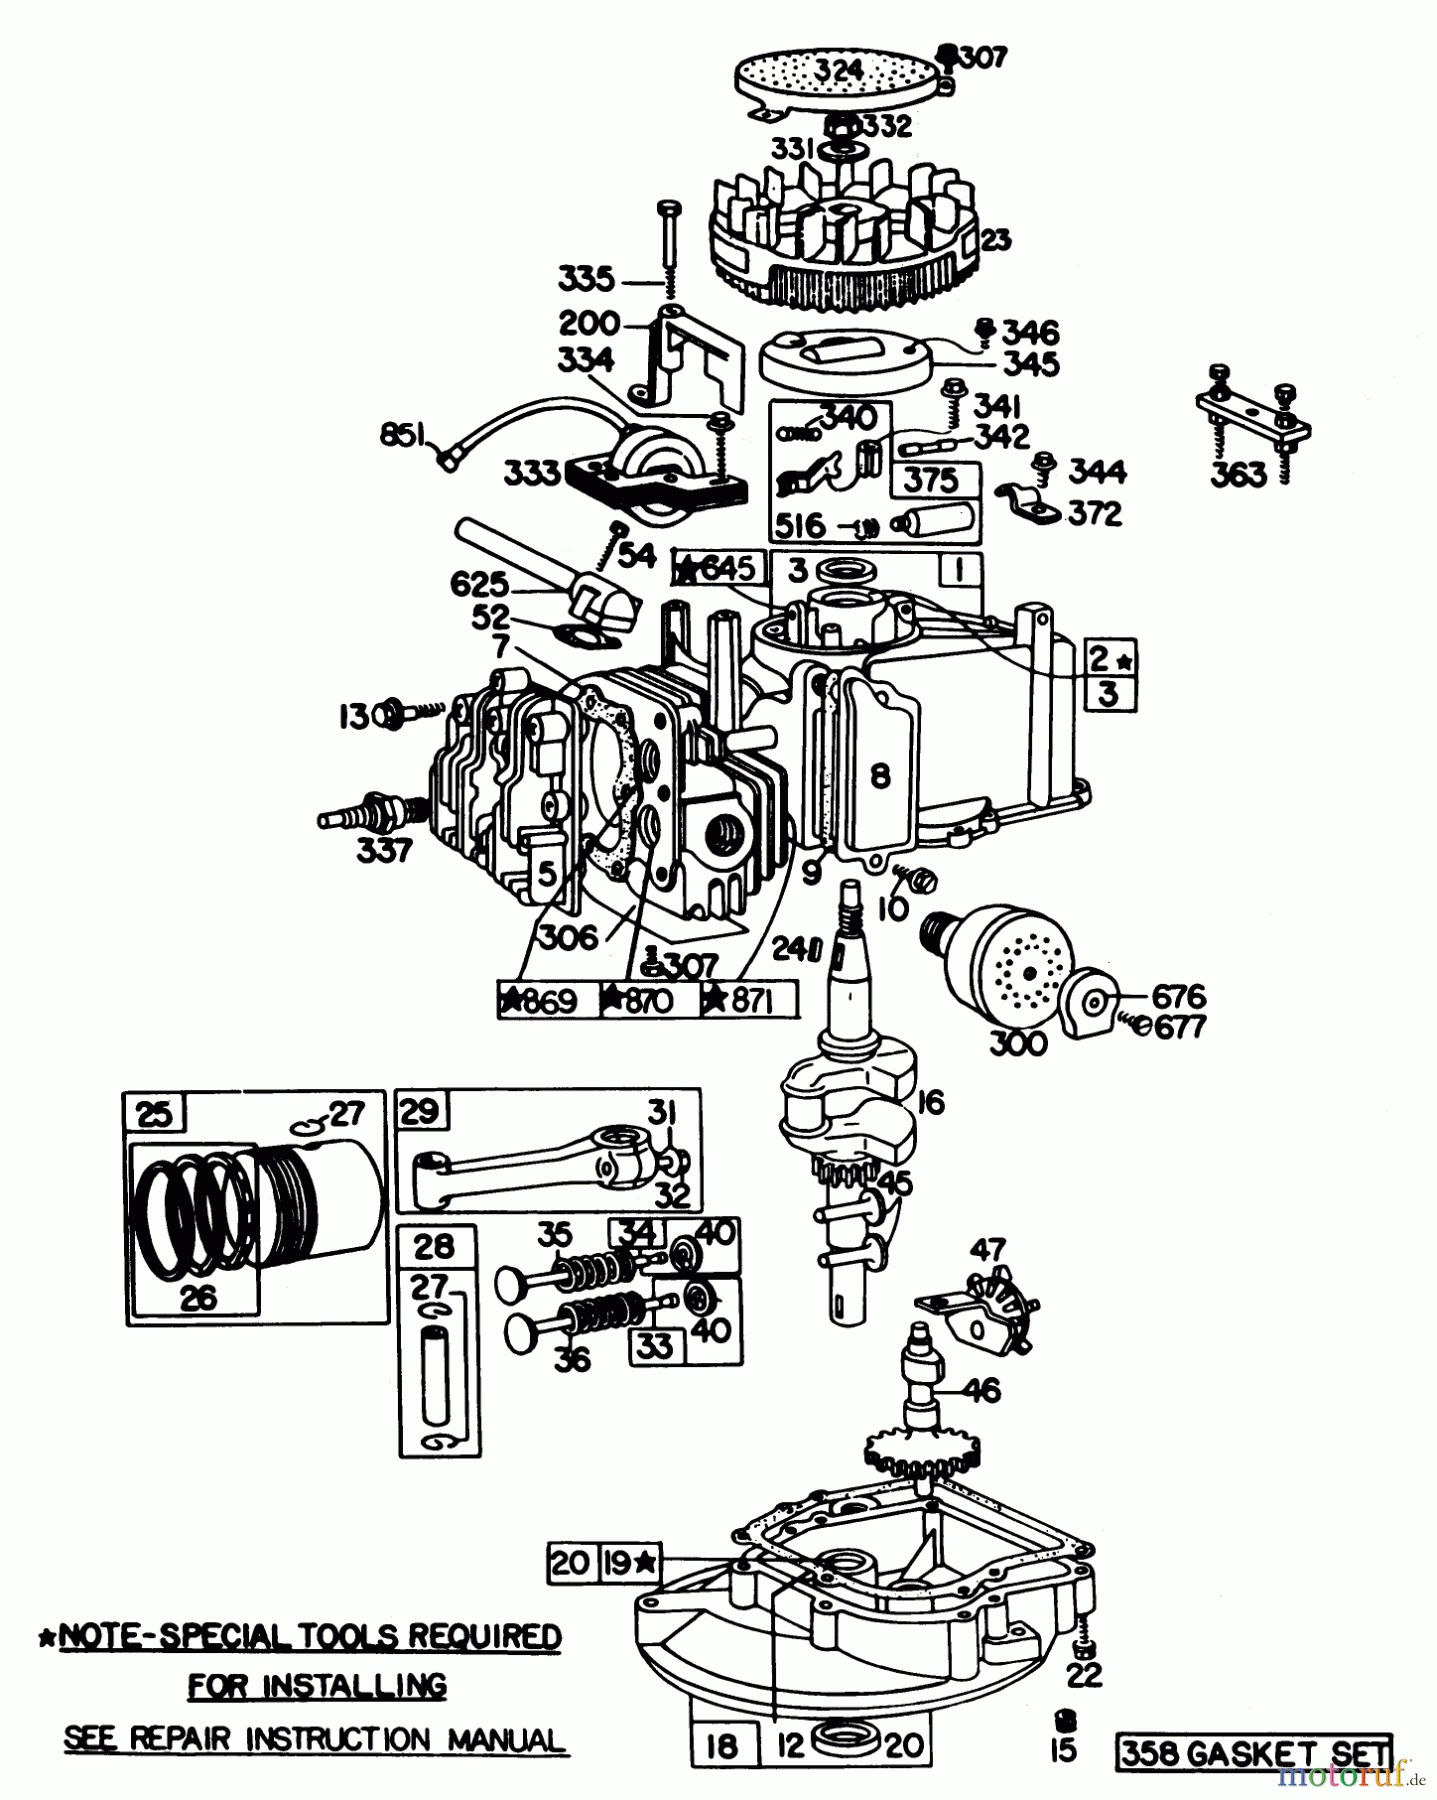  Toro Neu Mowers, Walk-Behind Seite 1 20725 - Toro Lawnmower, 1979 (9000001-9999999) ENGINE BRIGGS & STRATTON MODEL 92908-1956-02